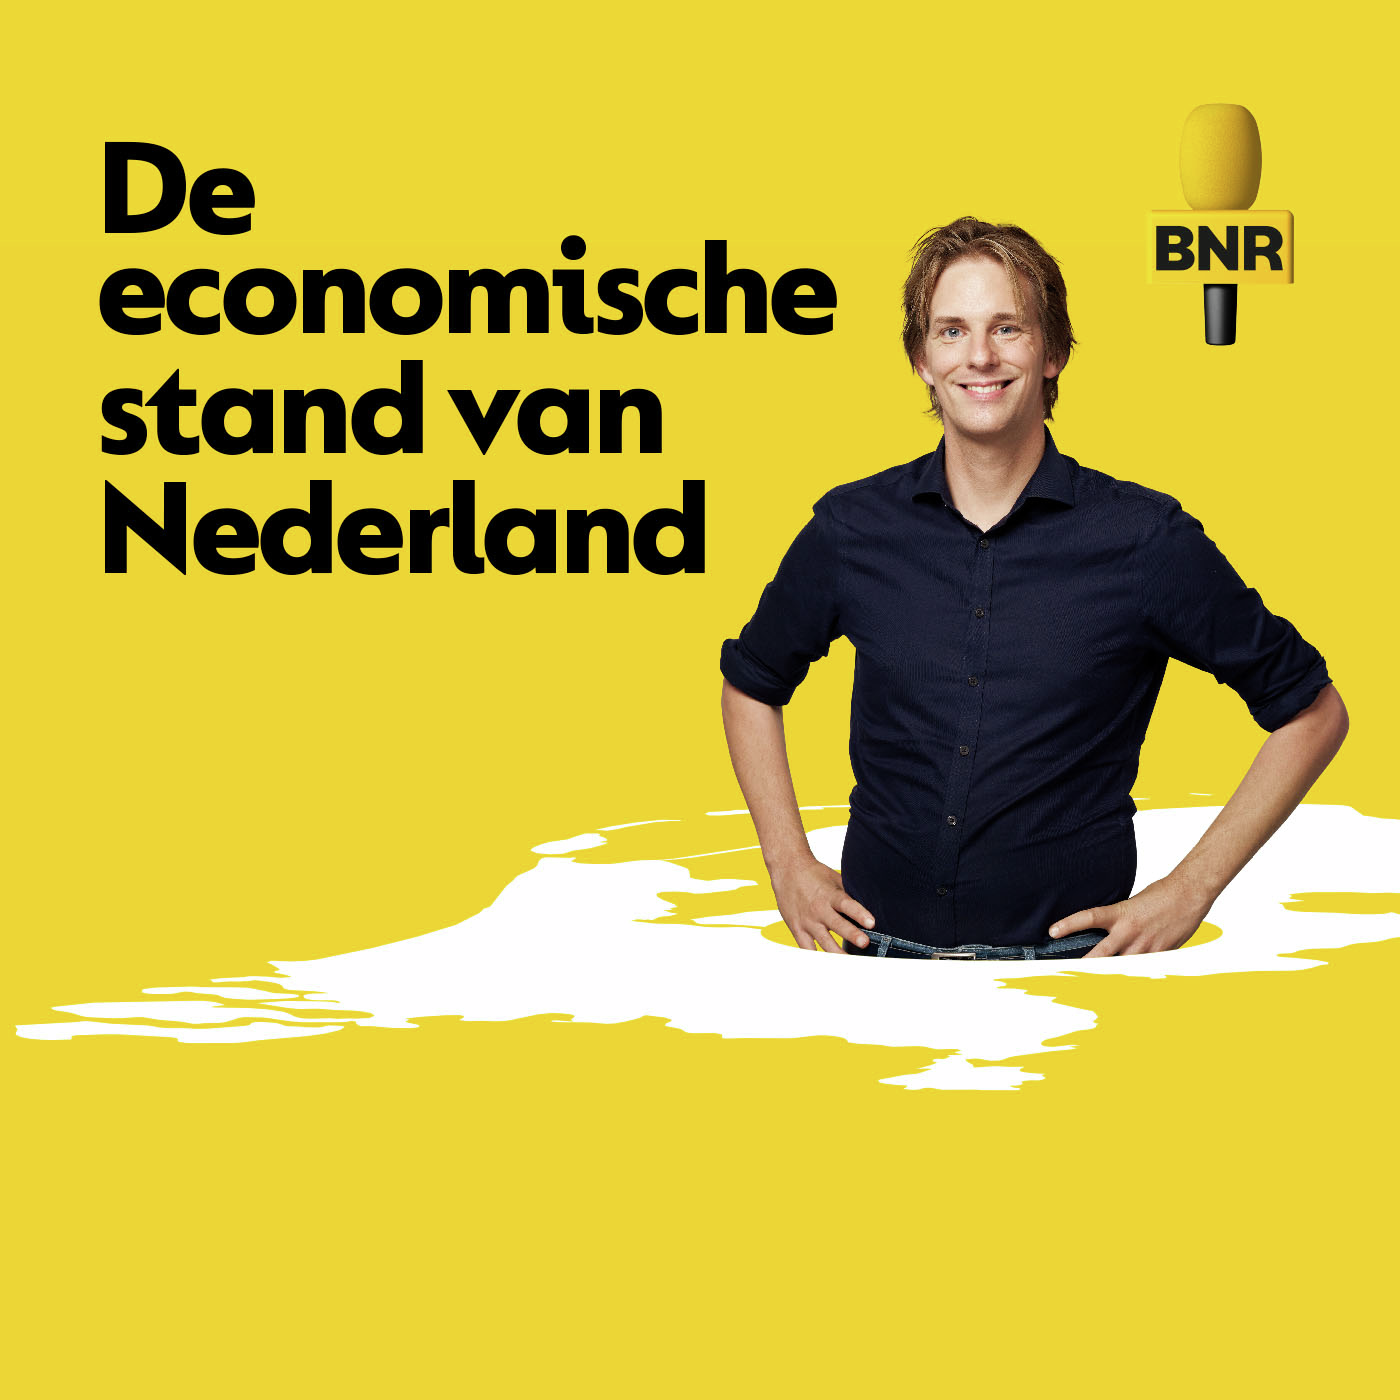 De economische stand van Nederland | Hoe groot is de kloof tussen de regio en Randstad?